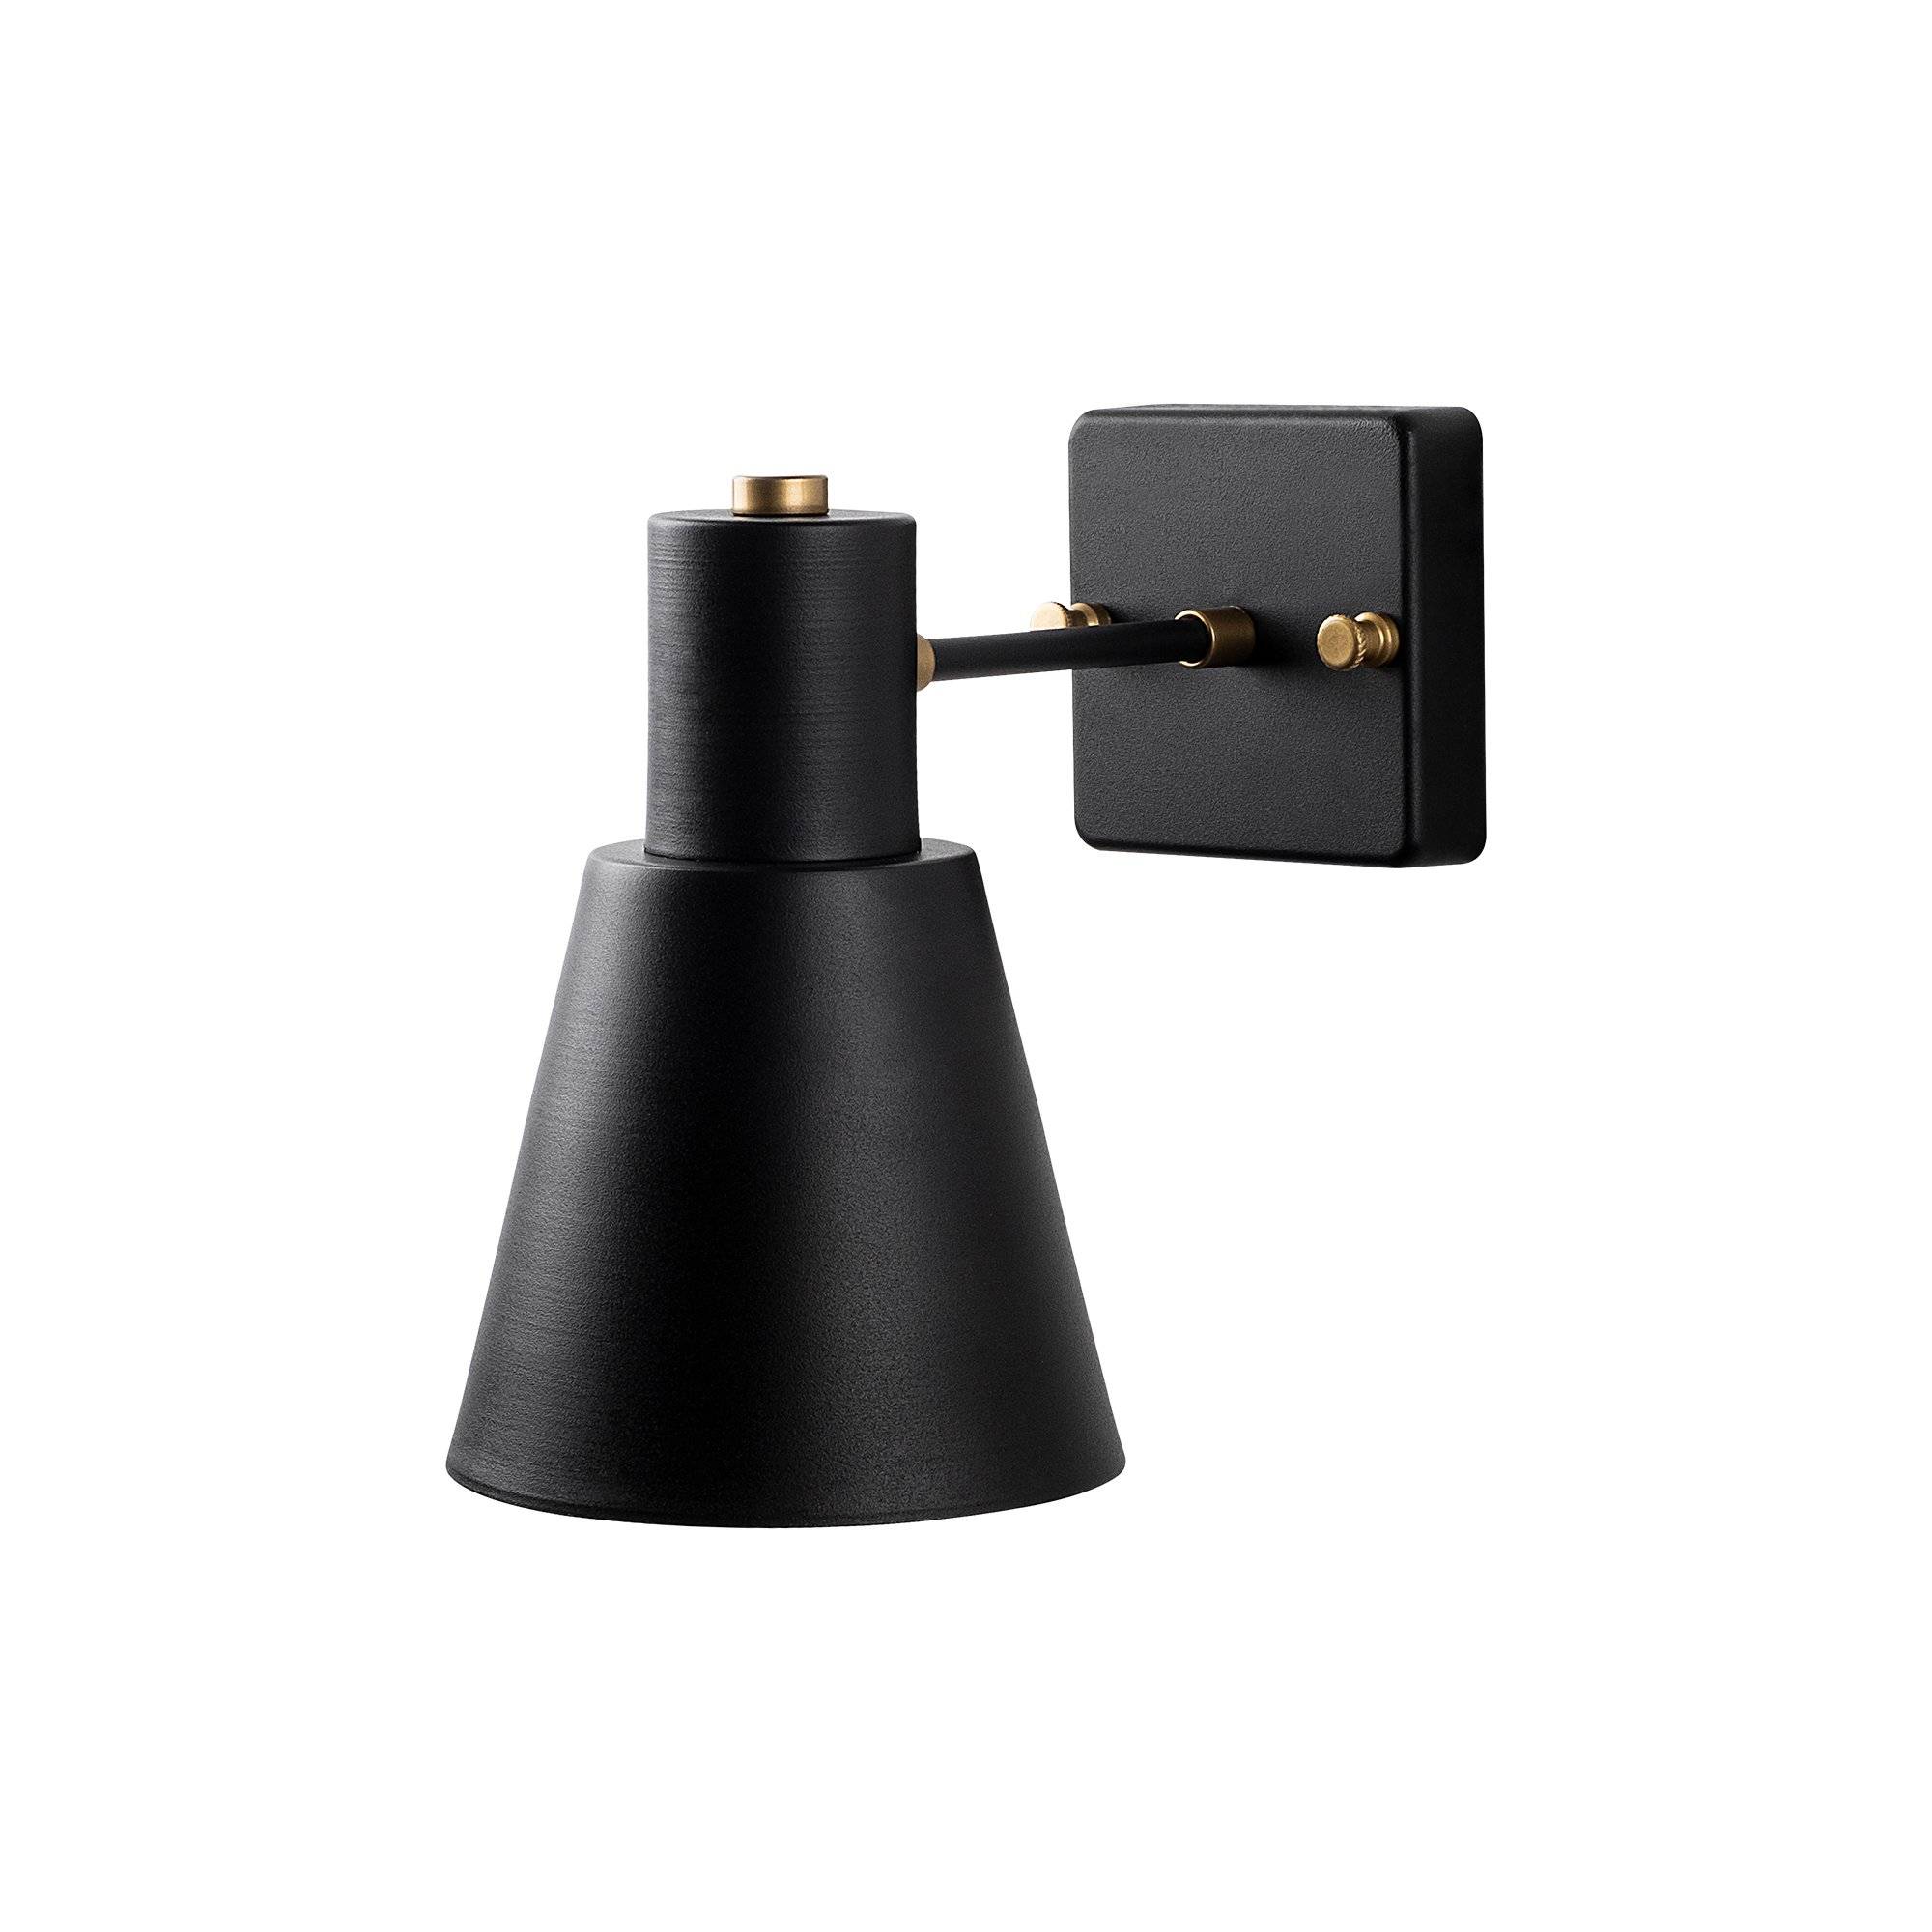 Wandlamp 1 lamp industriële stijl Dunster Metaal Zwart